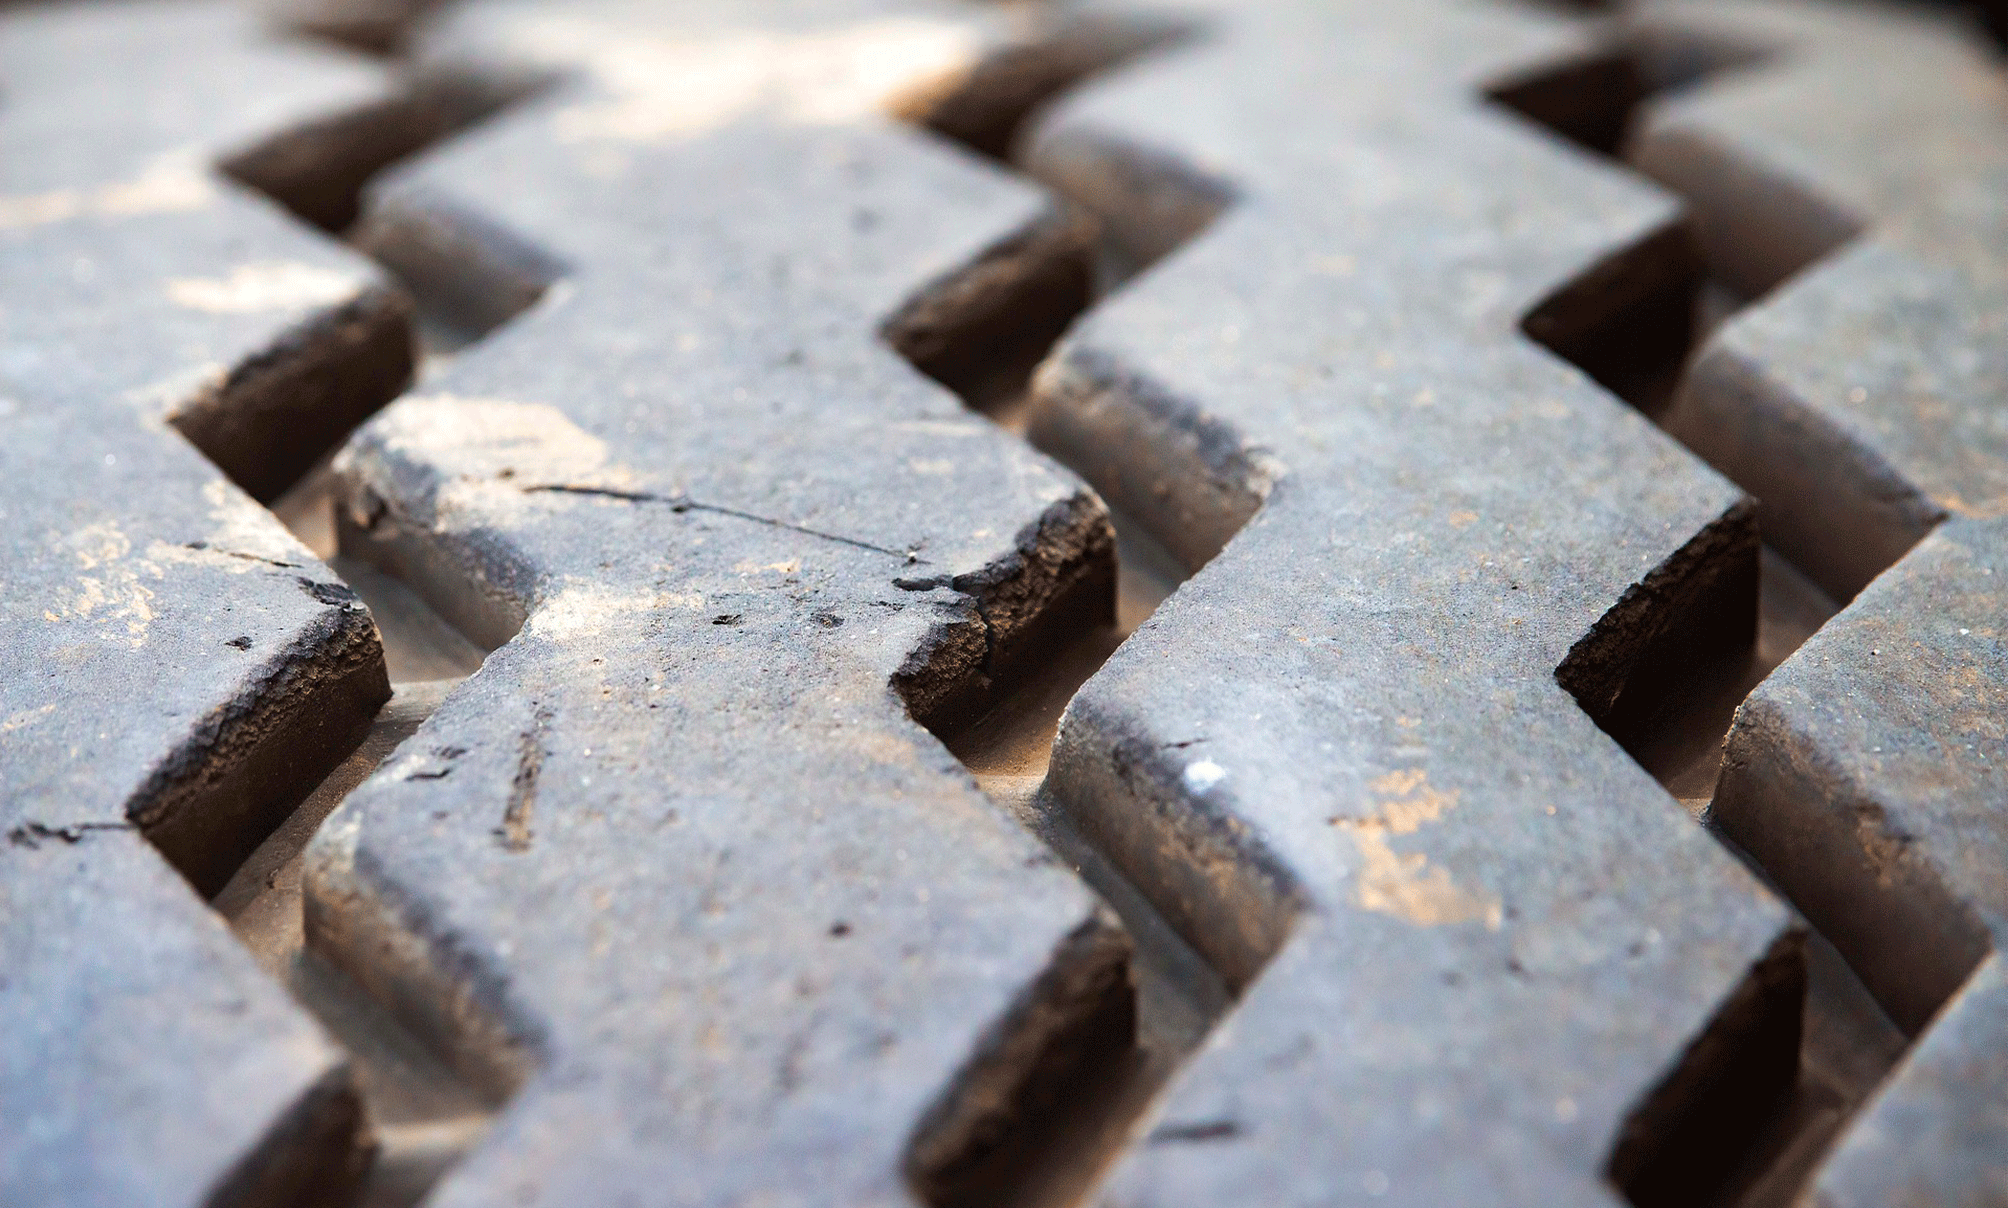 Comment a évolué le pneu depuis sa création ? 